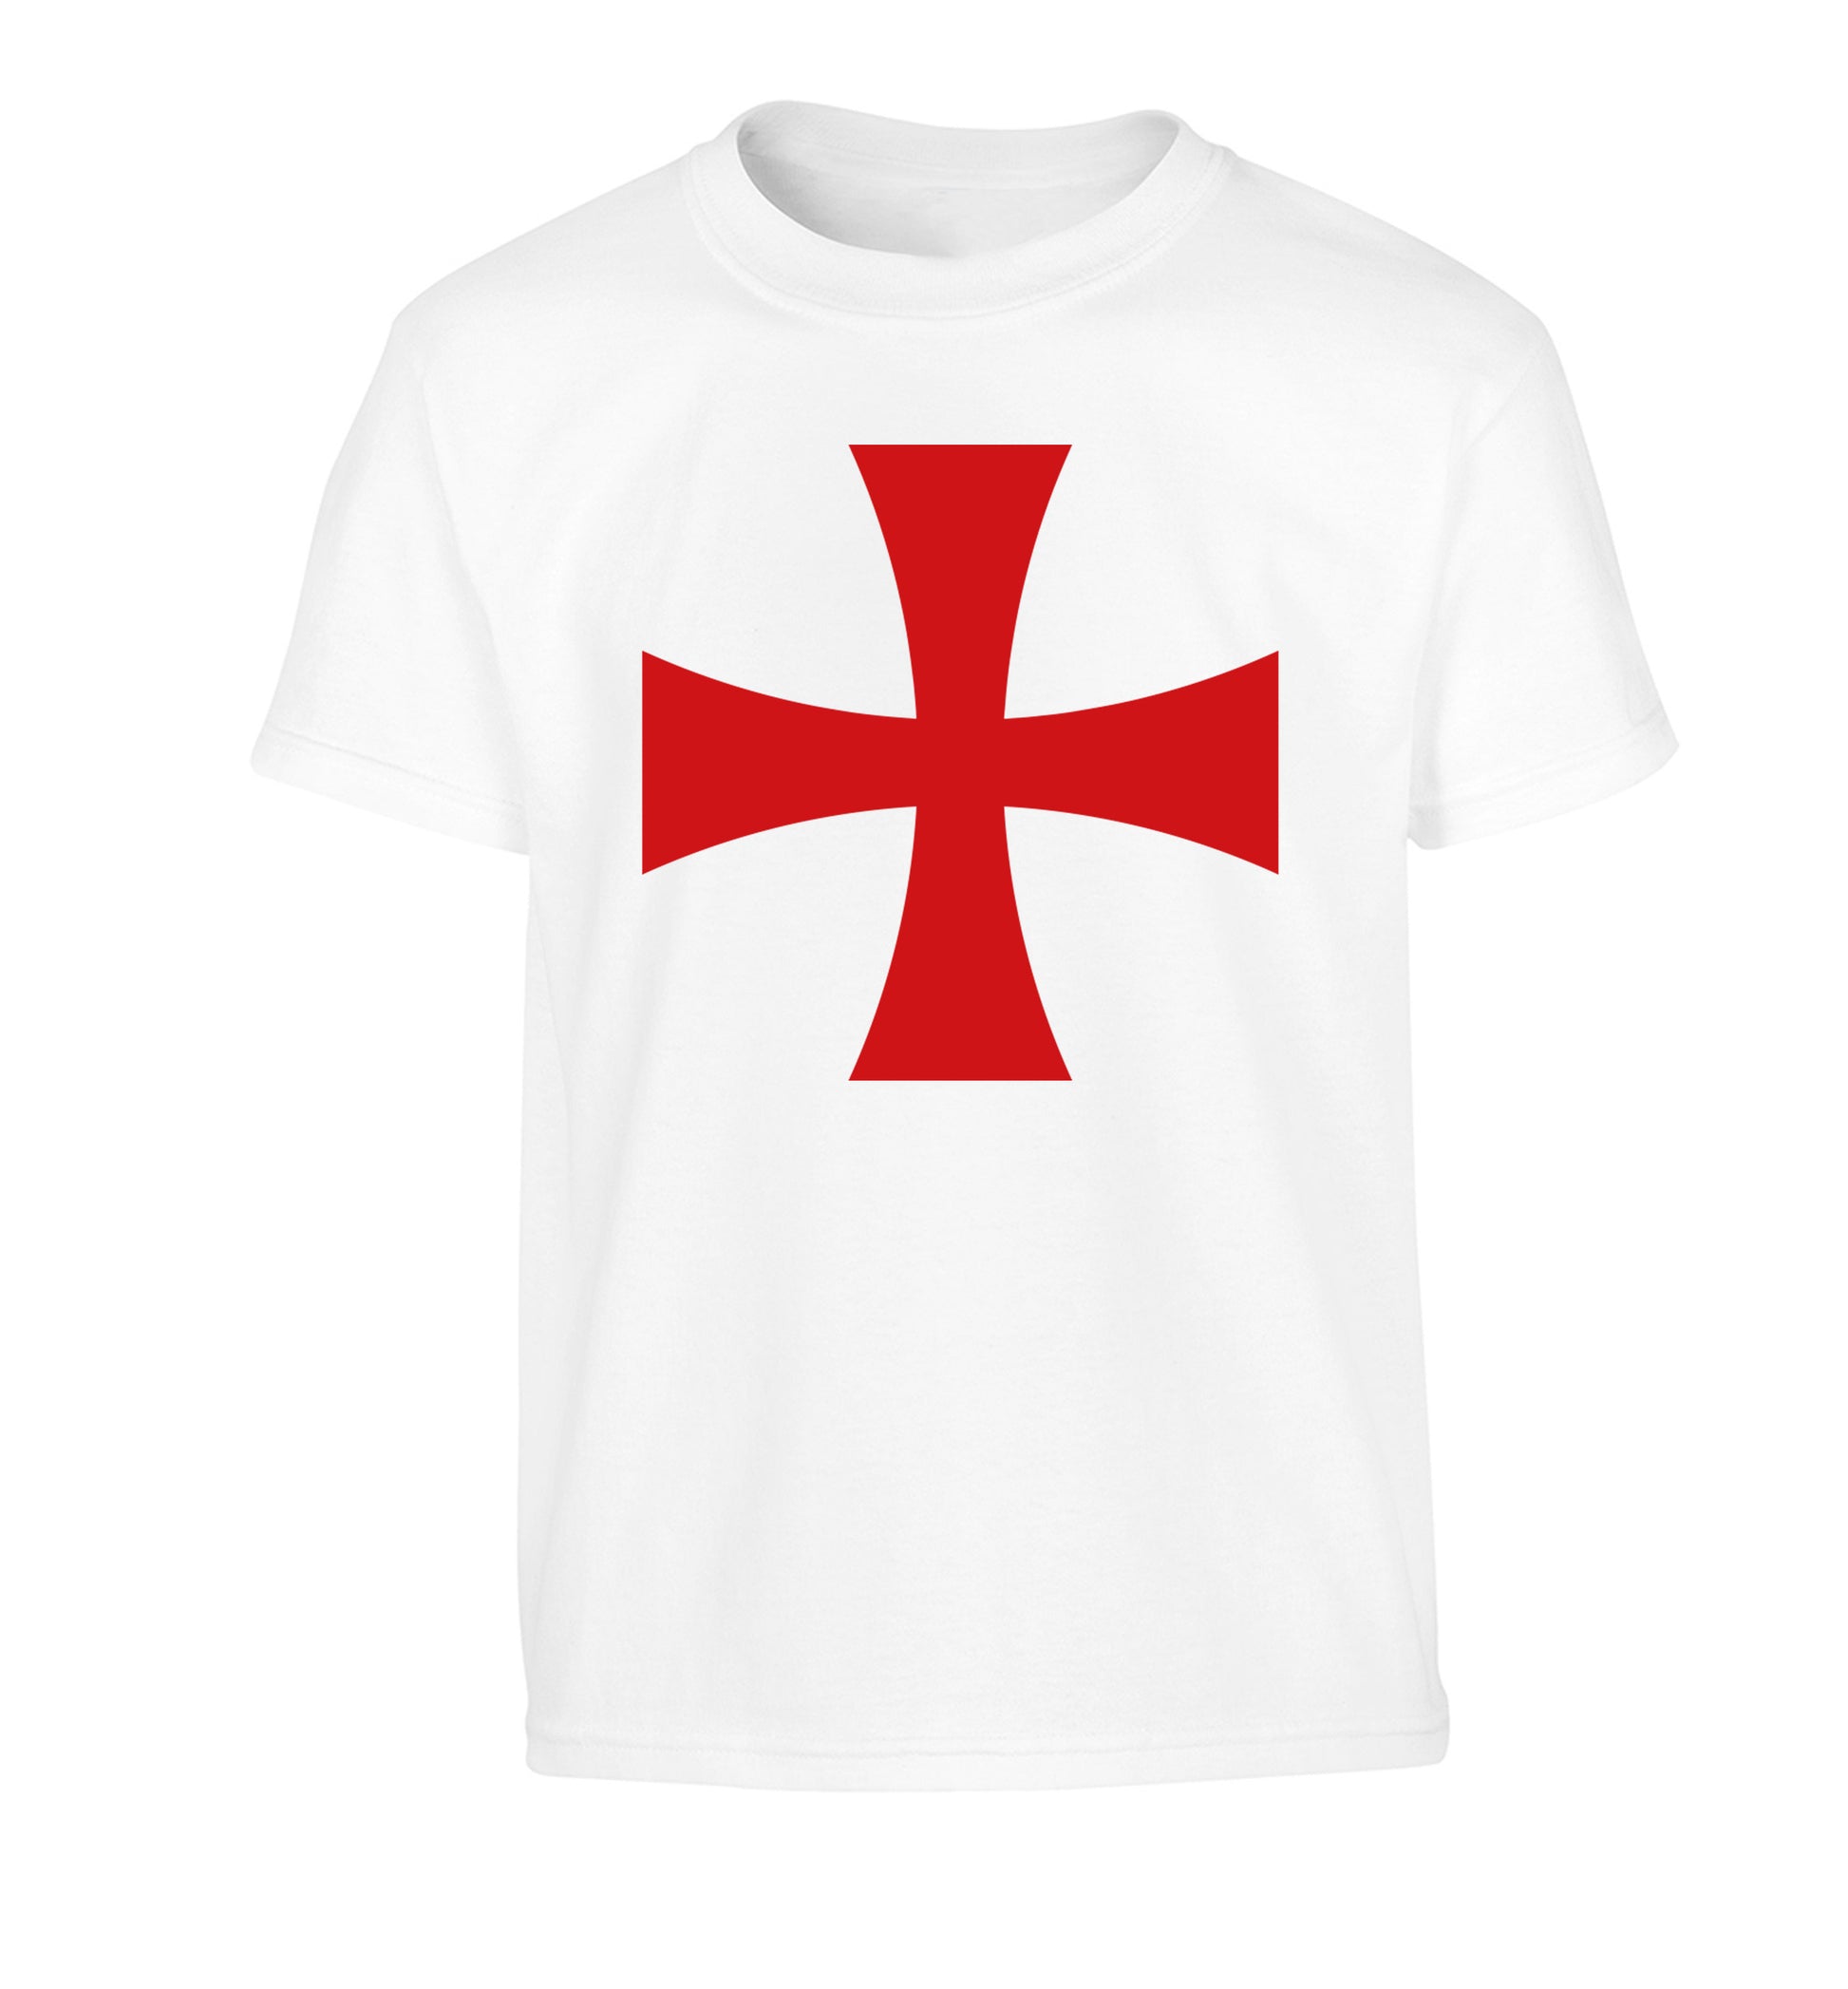 Knights Templar cross Children's white Tshirt 12-14 Years